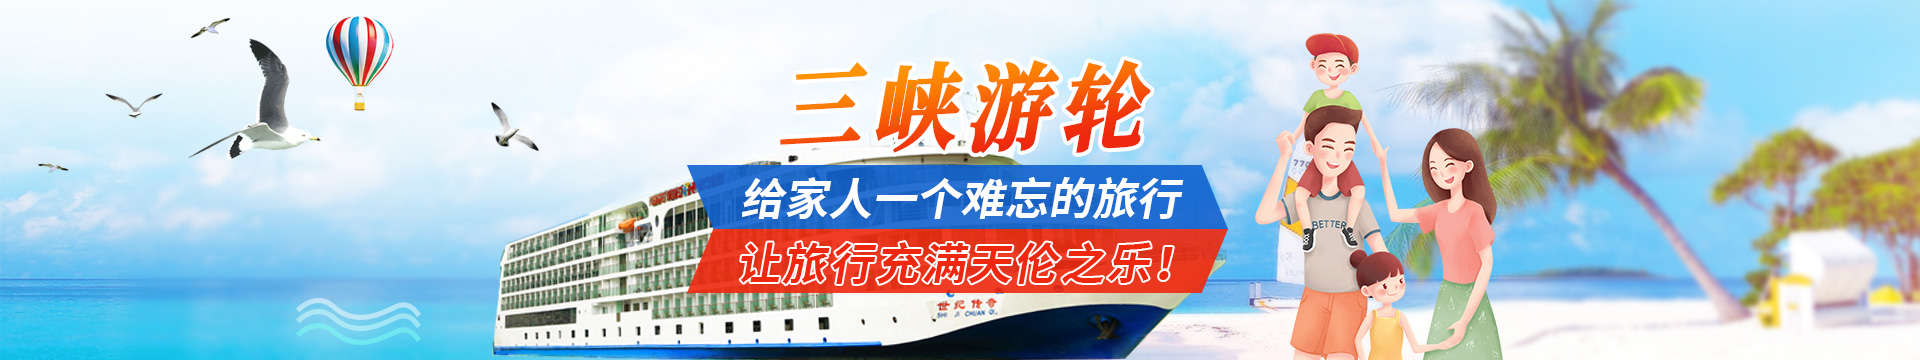 长江三峡游轮旅游